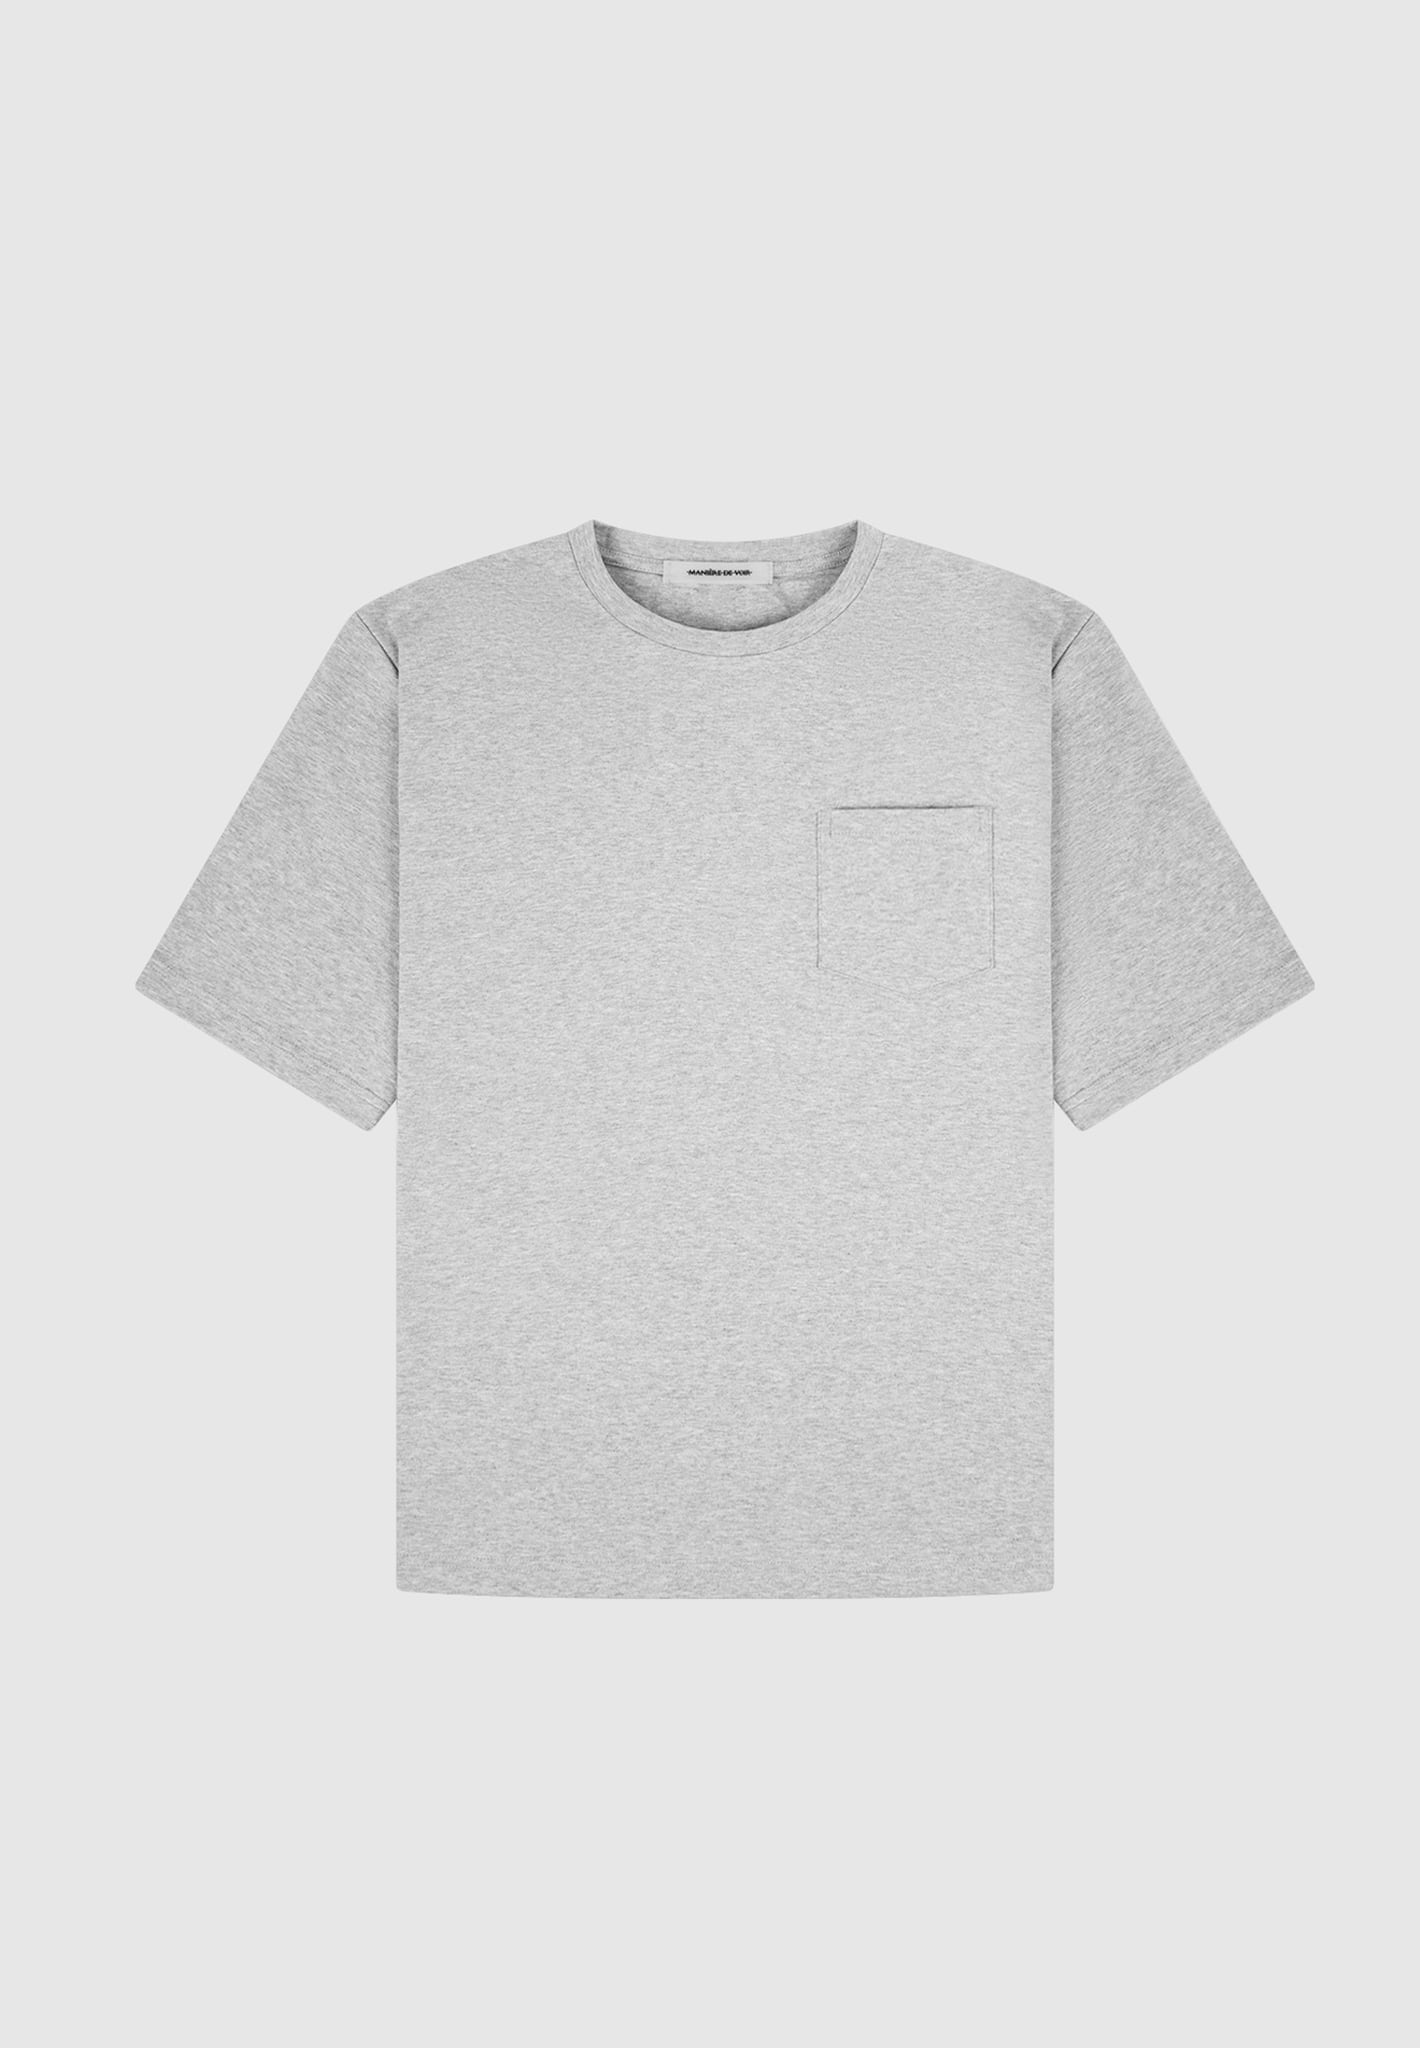 Louis Vuitton 3D Monogram T-Shirt White. Size S0